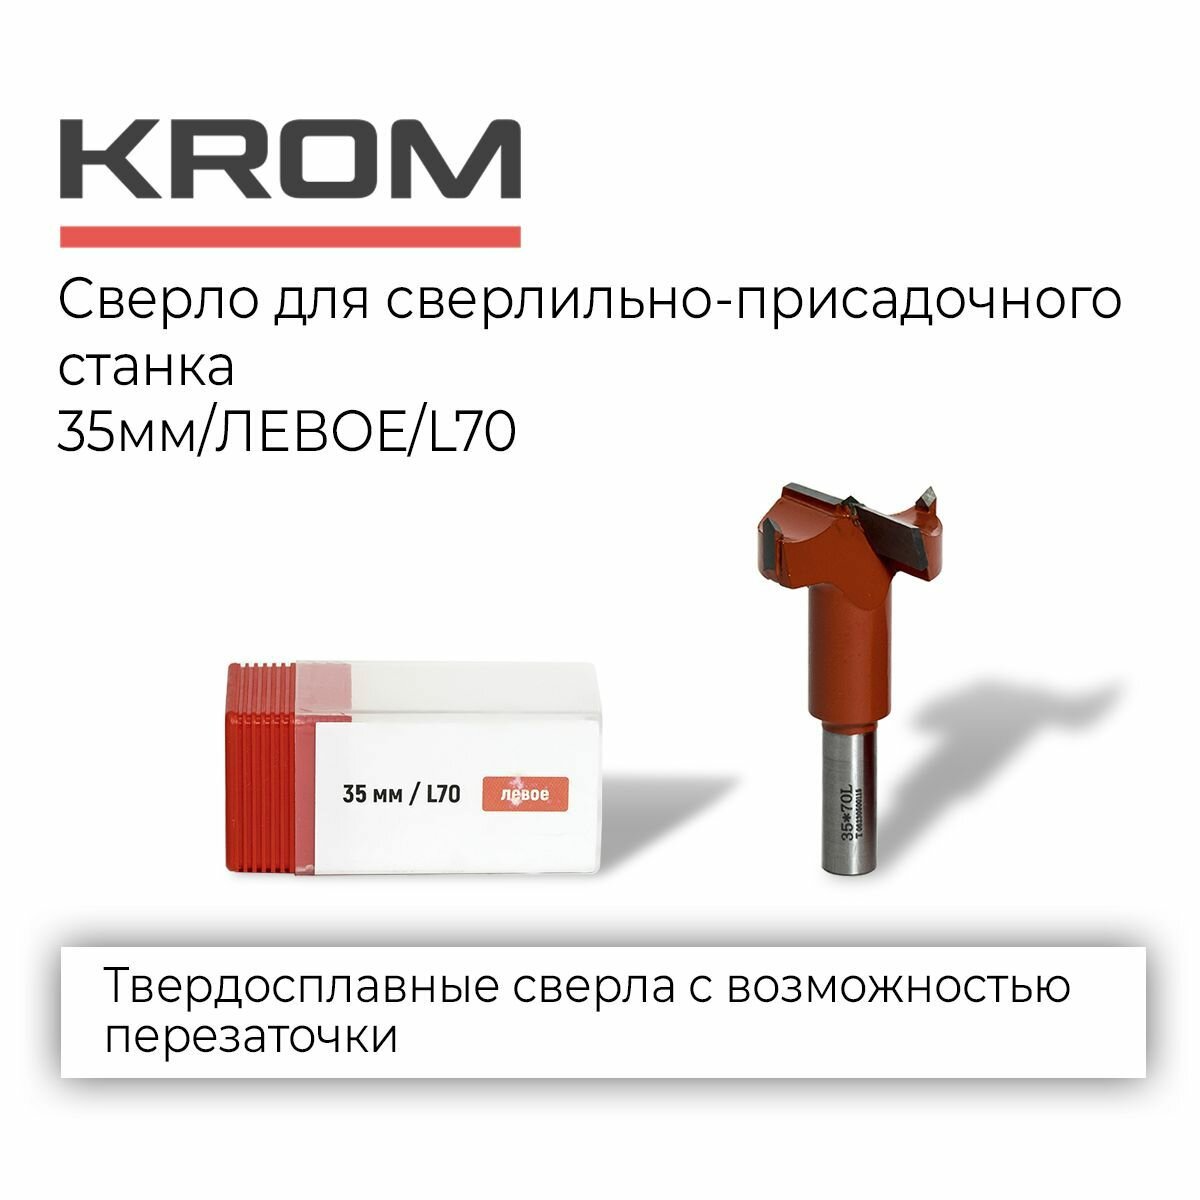 Сверла Krom D35/70/левое/форстнера для сверлильно-присадочного станка